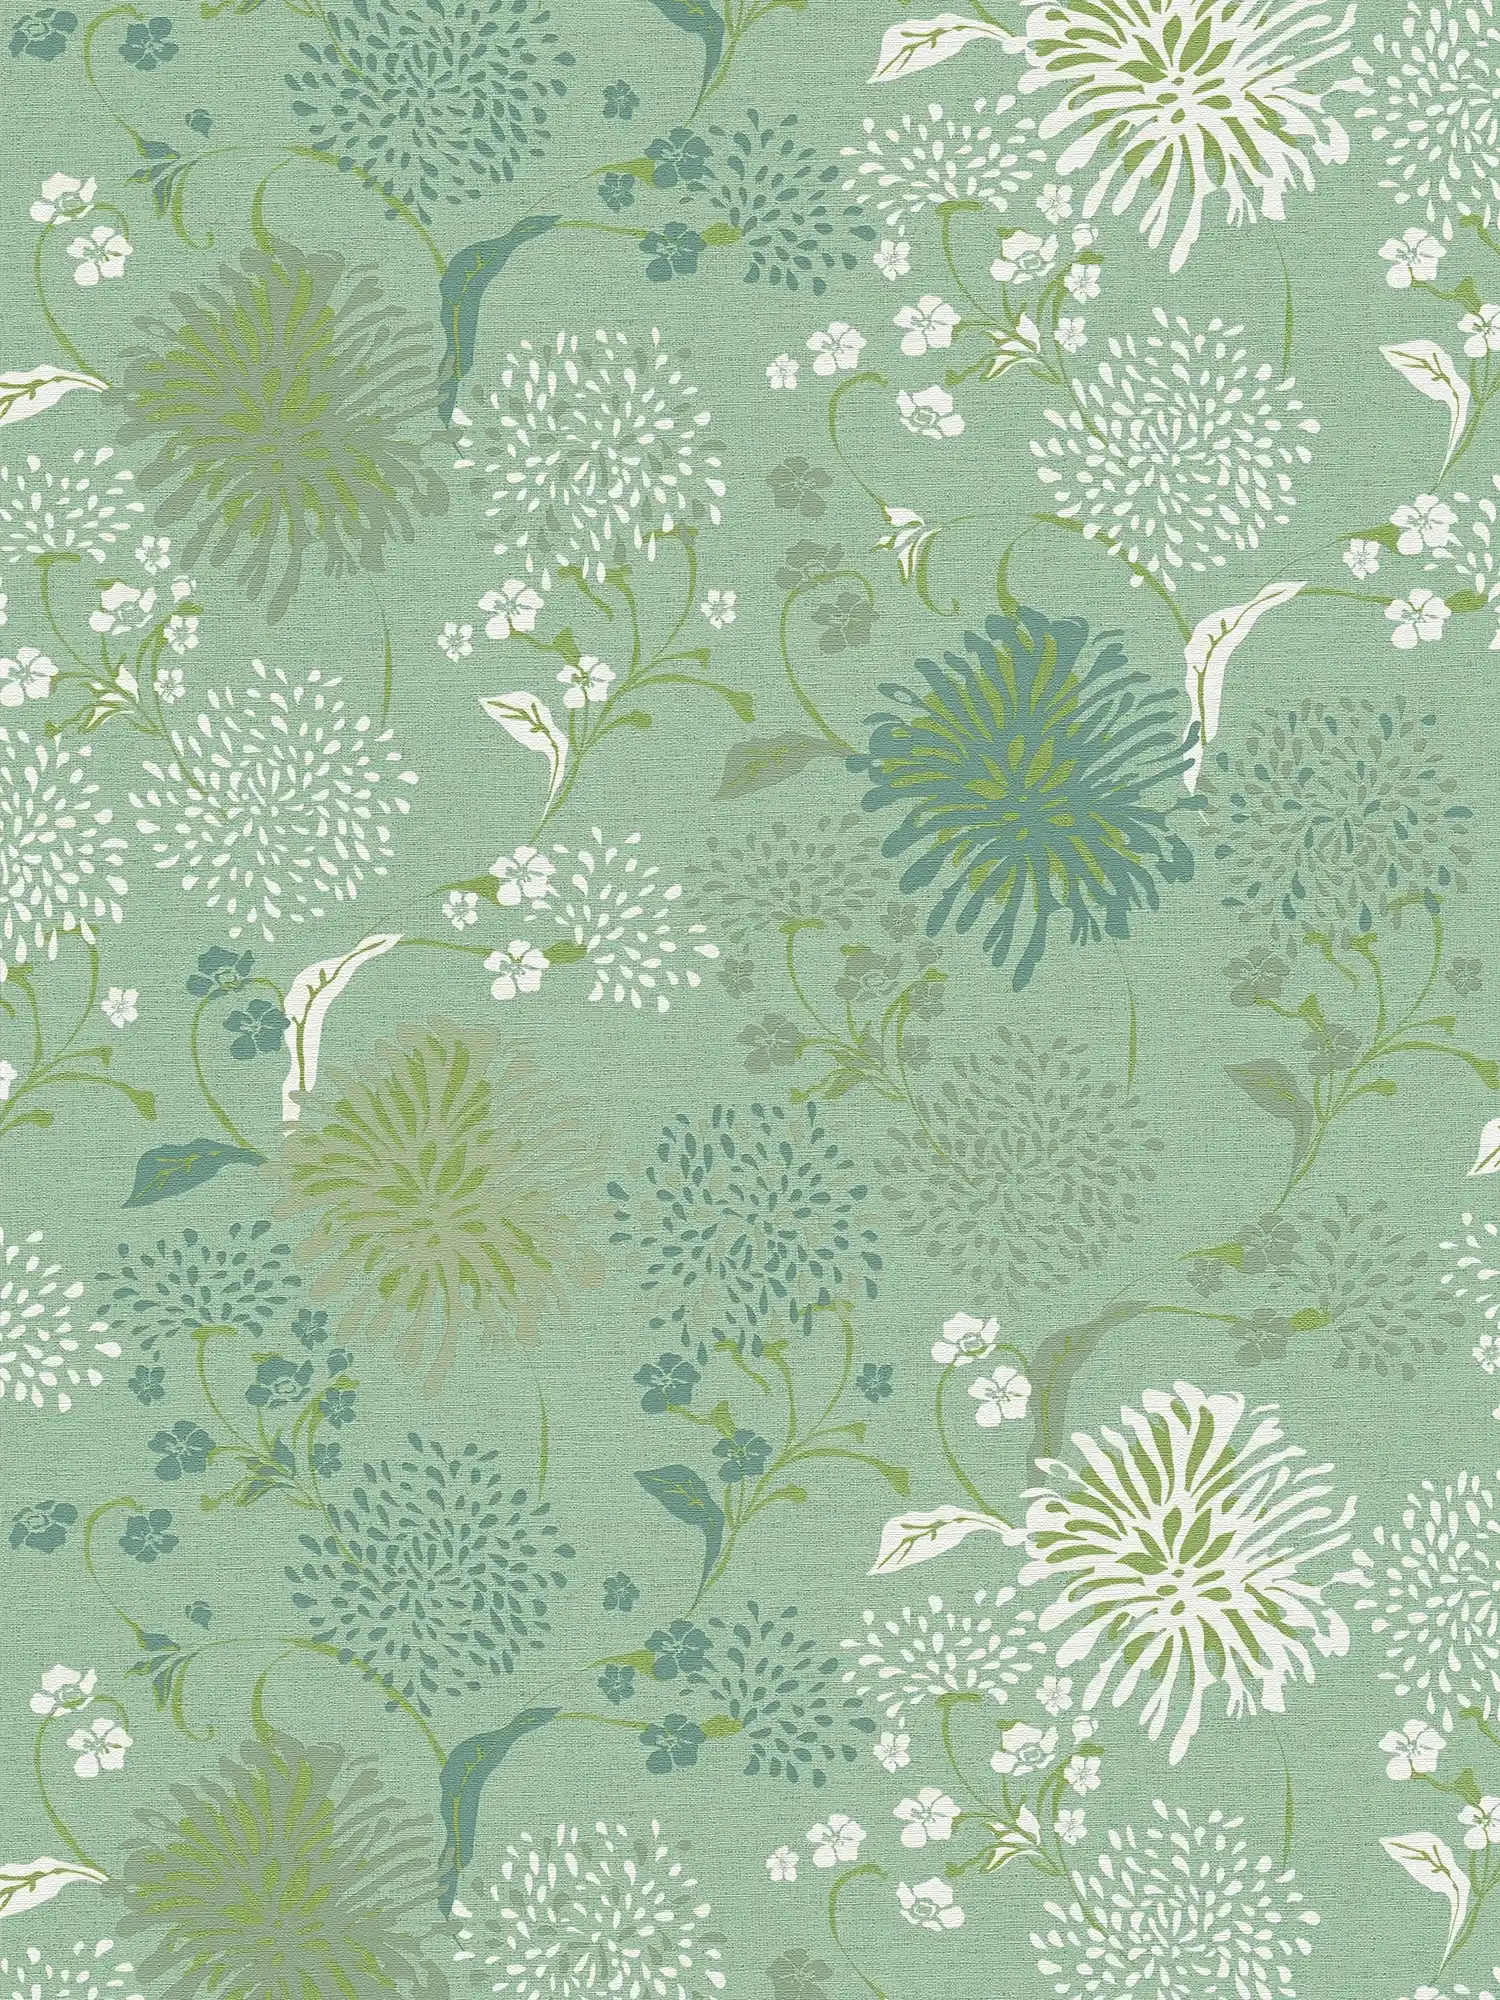 Vliestapete mit floralem Pusteblumen-Muster – Grün, Weiß
